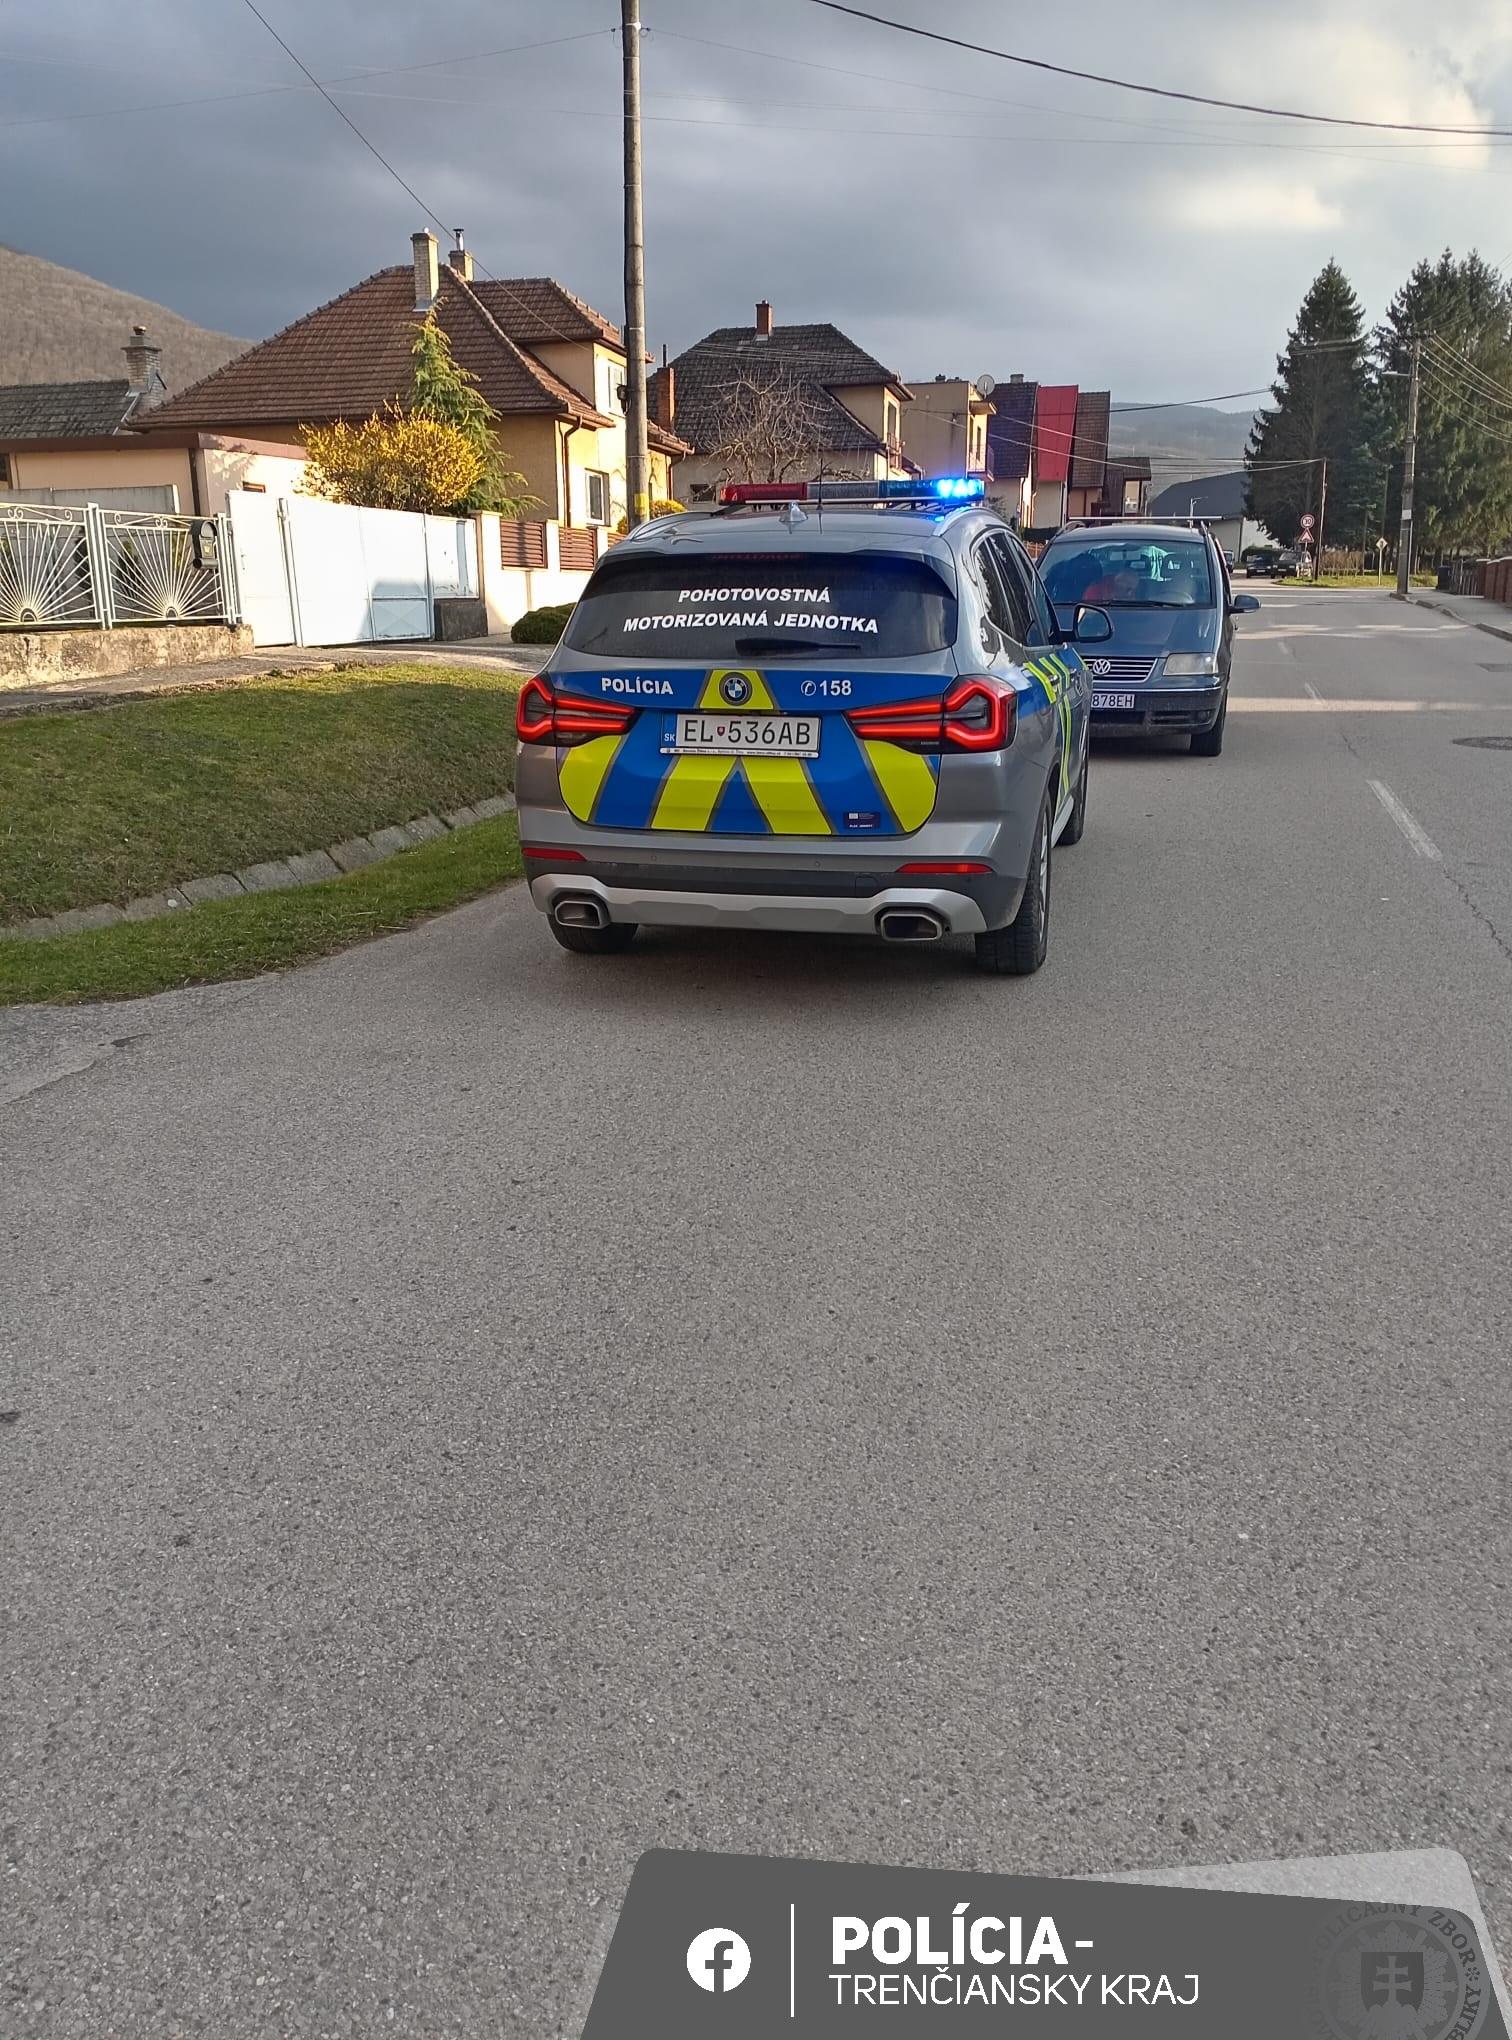 Polícia v Trenčianskom okrese prichytila dvoch opitých mužov za volantom jedného auta.